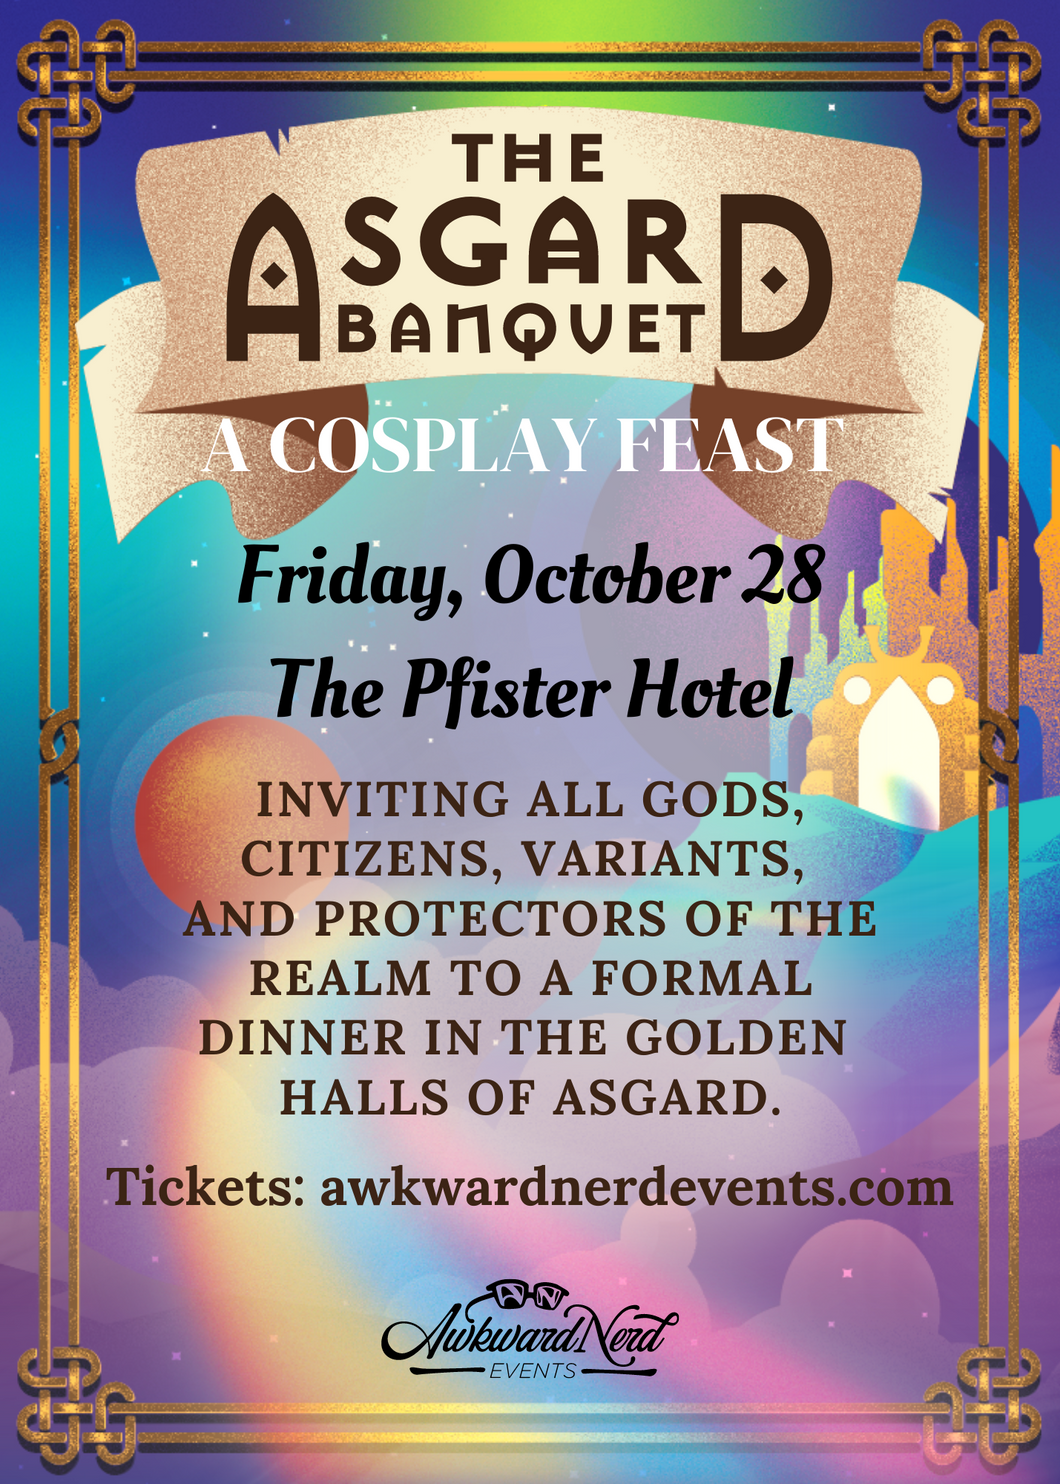 The Asgard Banquet - A Cosplay Feast